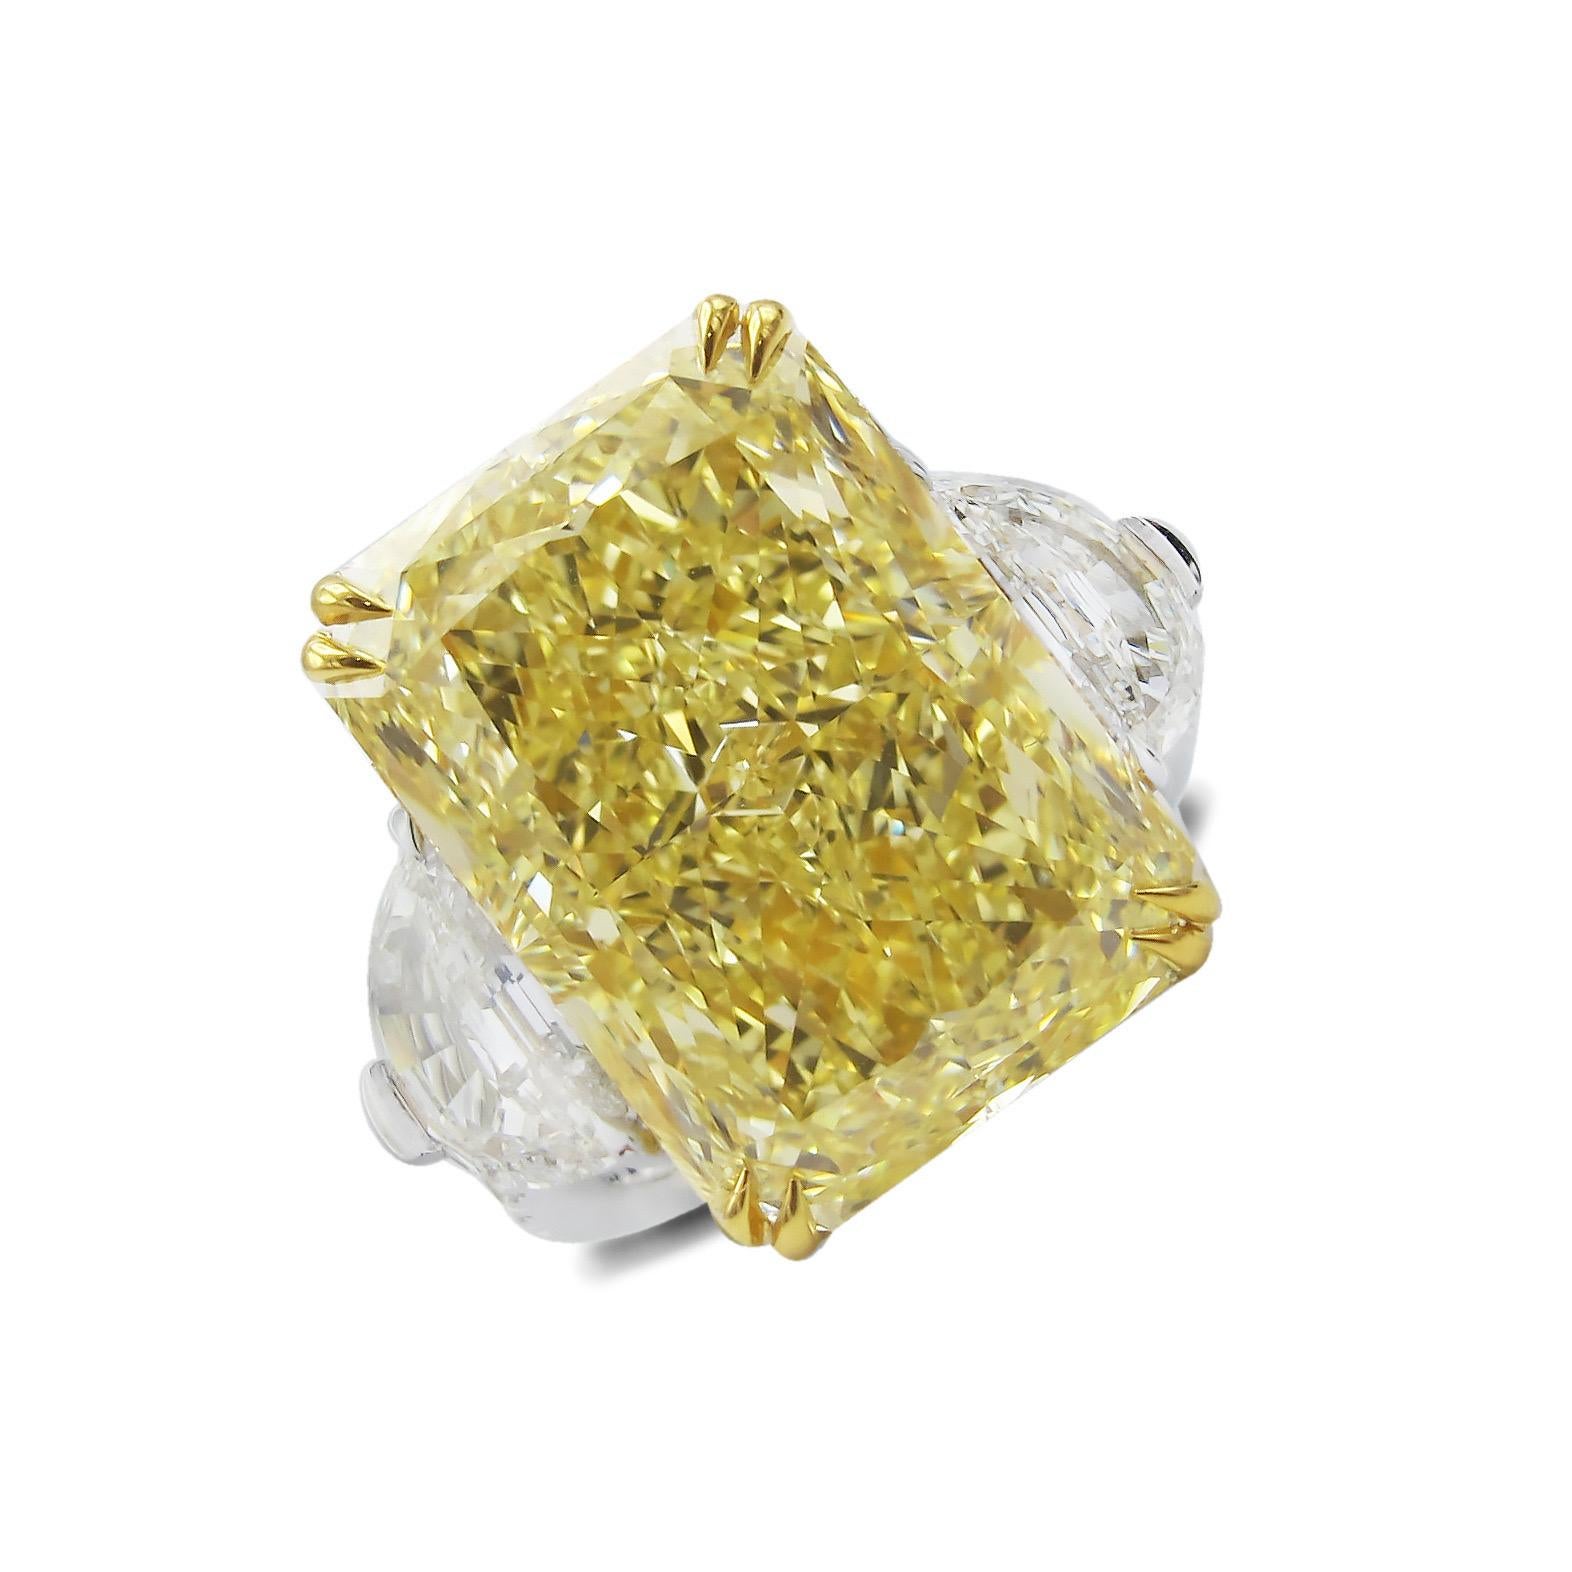 Aus dem Museumsgewölbe von Emilio Jewelry in der berühmten New Yorker Fifth Avenue,
Präsentiert einen ganz besonderen und seltenen Gia-zertifizierten, natürlichen, intensiv gelben Radiant in der Mitte. Dieser Diamant ist nicht nur wegen seiner